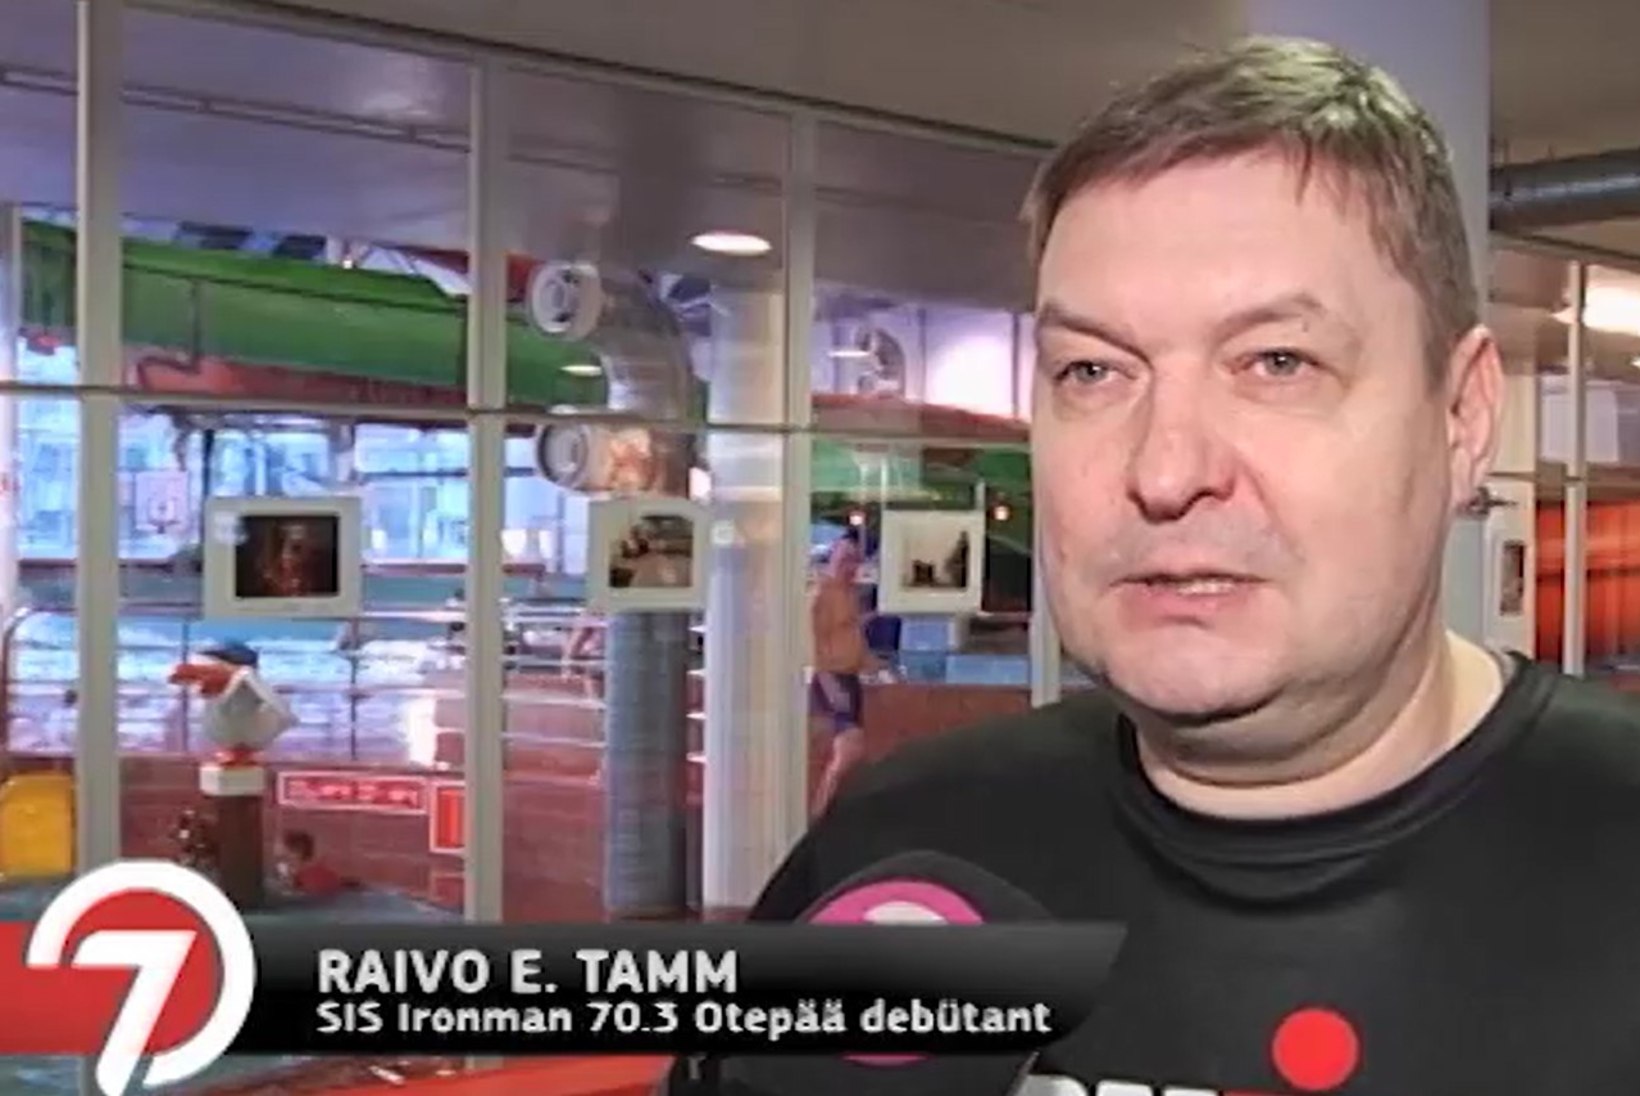 TV3 VIDEO | ÜLLATUS MISSUGUNE: Raivo E. Tamm otsustas hakata treenima Ironmani triatloniks: "See saab olema minu elu kõige hullem projekt!" 